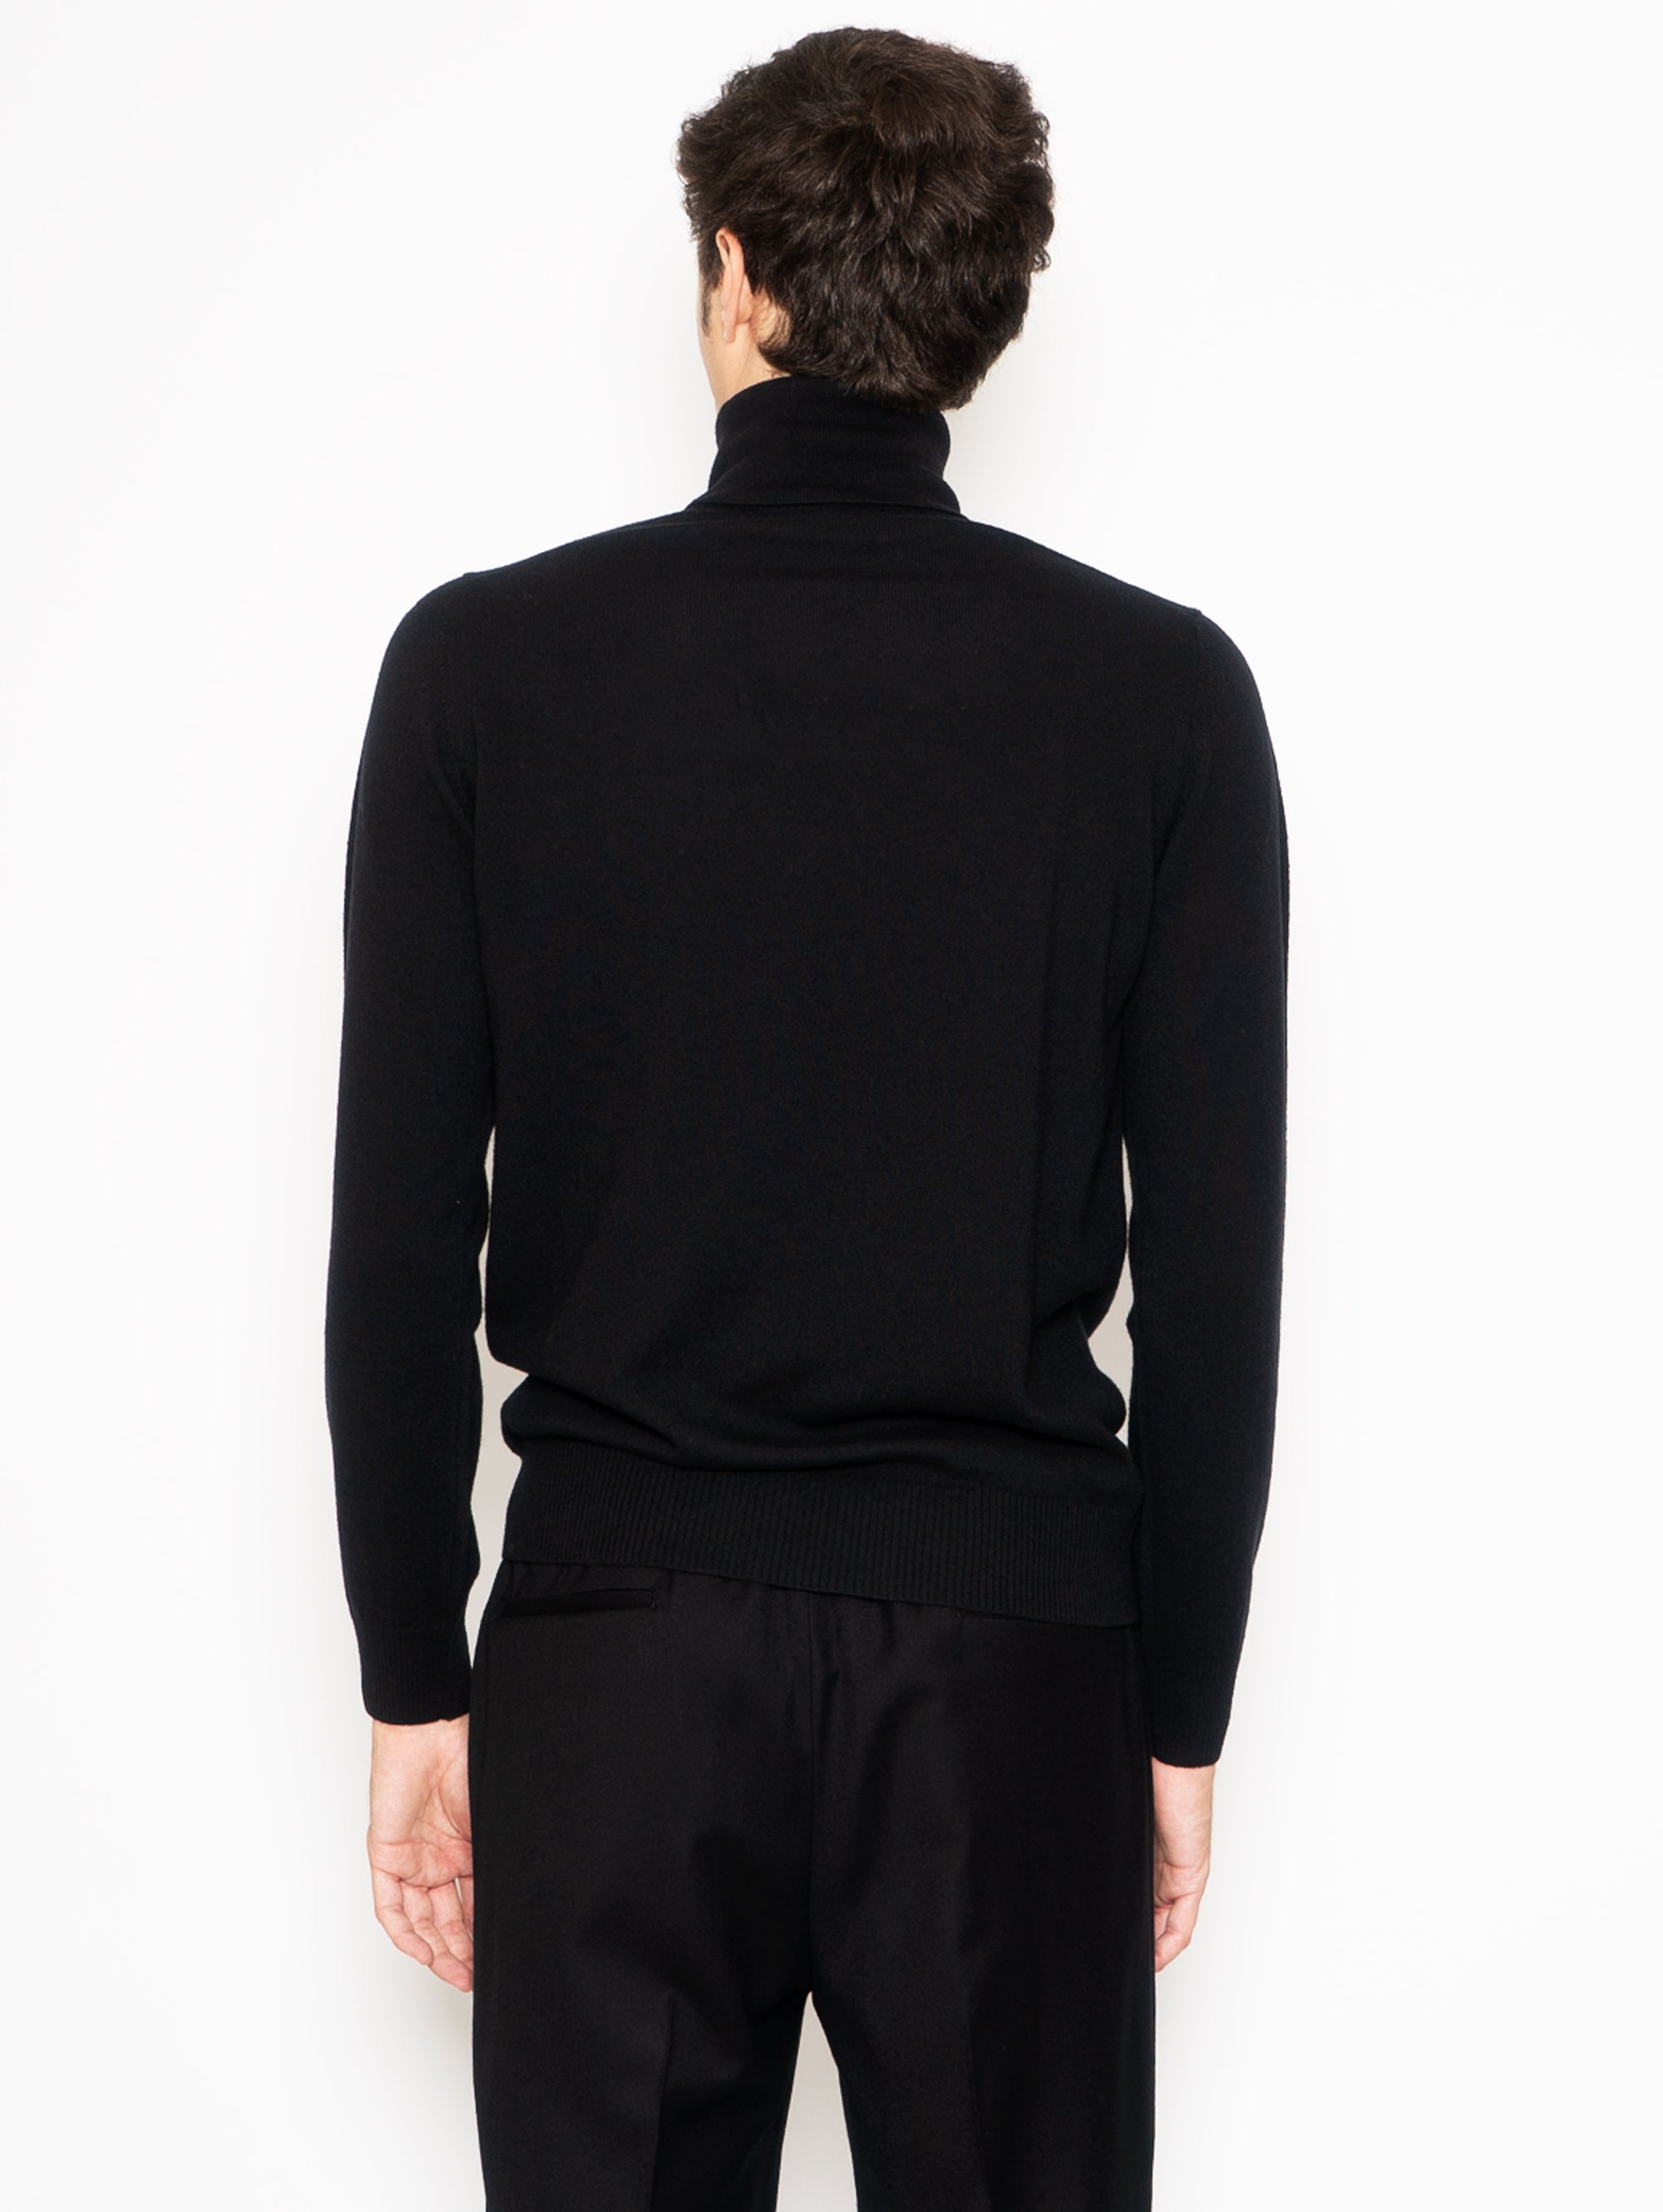 Schwarzer Pullover mit hohem Kragen